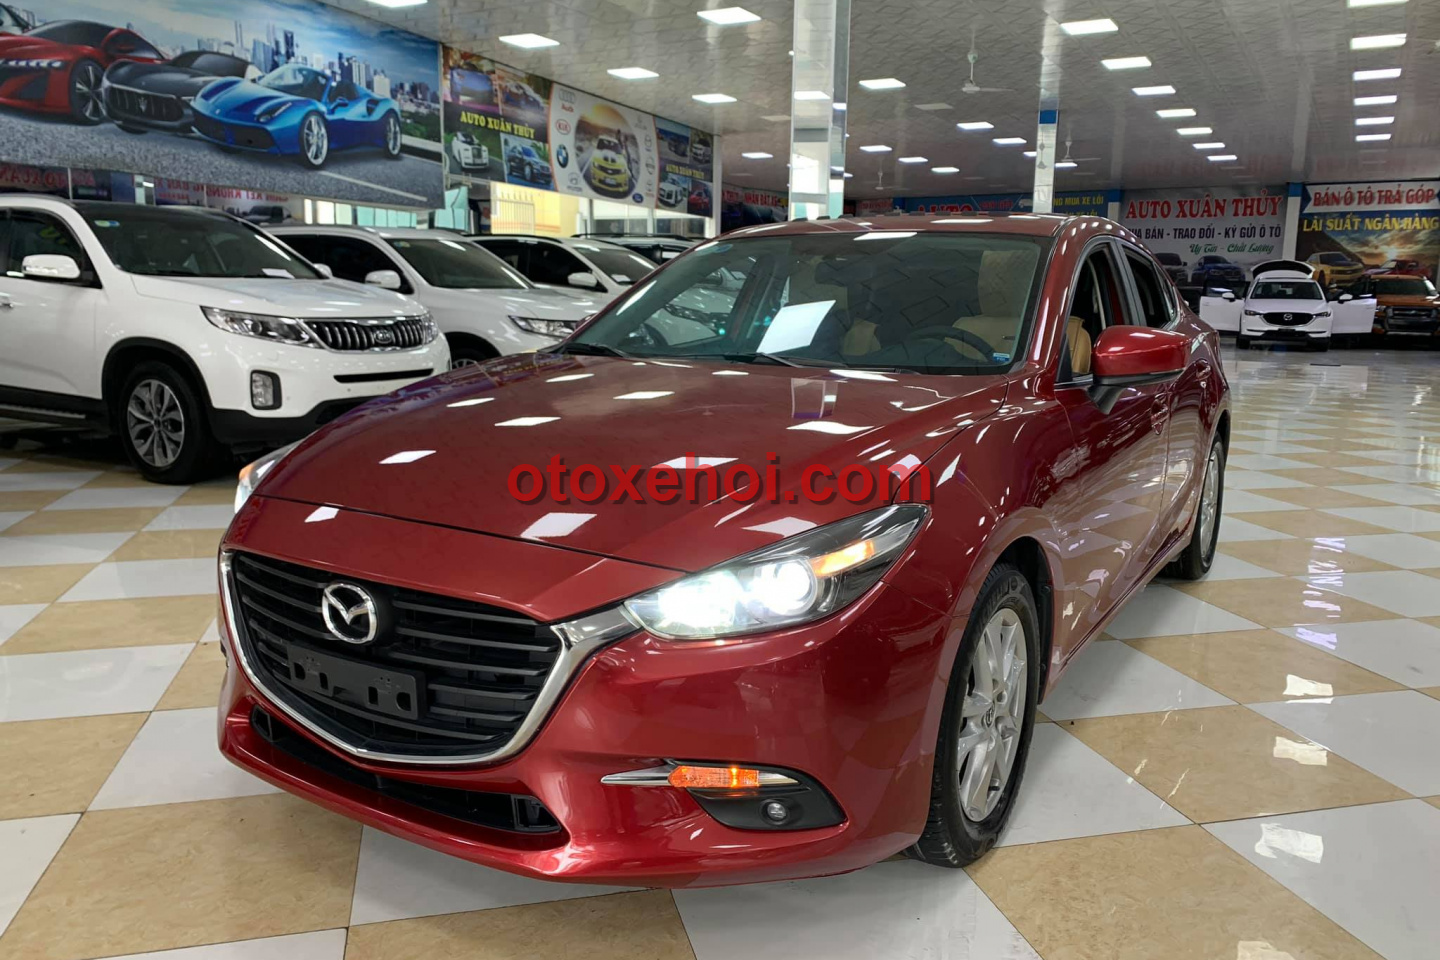 Giá bán xe ô tô Mazda 3 1.5L Xe cũ Số tự động tại Quảng Ninh | Mua bán ...